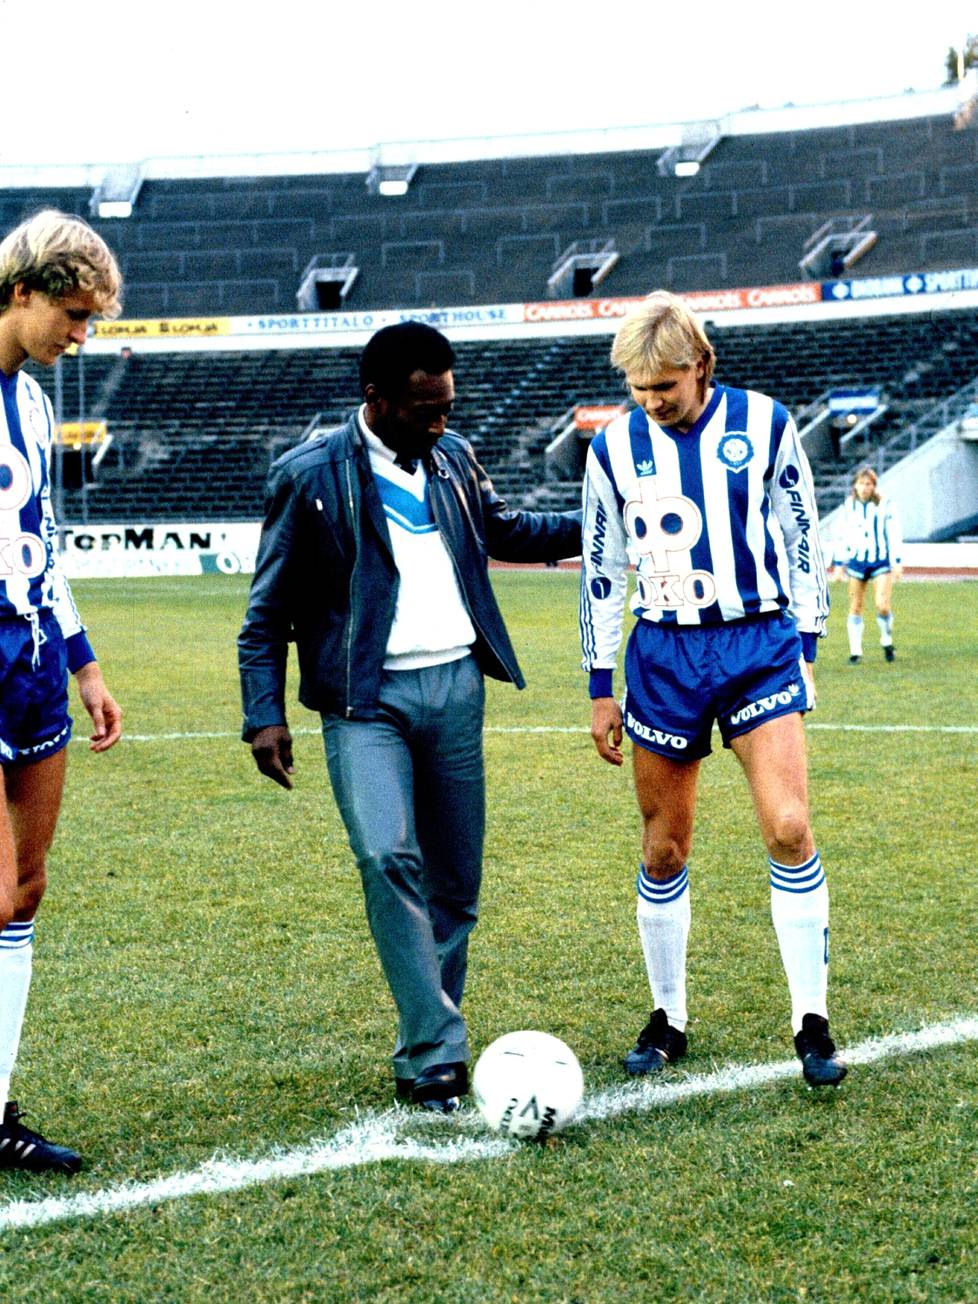 Pelé suoritti HJK-Kuusysi-ottelun seremoniallisen avauspotkun Helsingin olympiastadionilla 21. syyskuuta 1986. Markku Kanerva (vas.) ja Kari Martonen seurasivat vierestä.